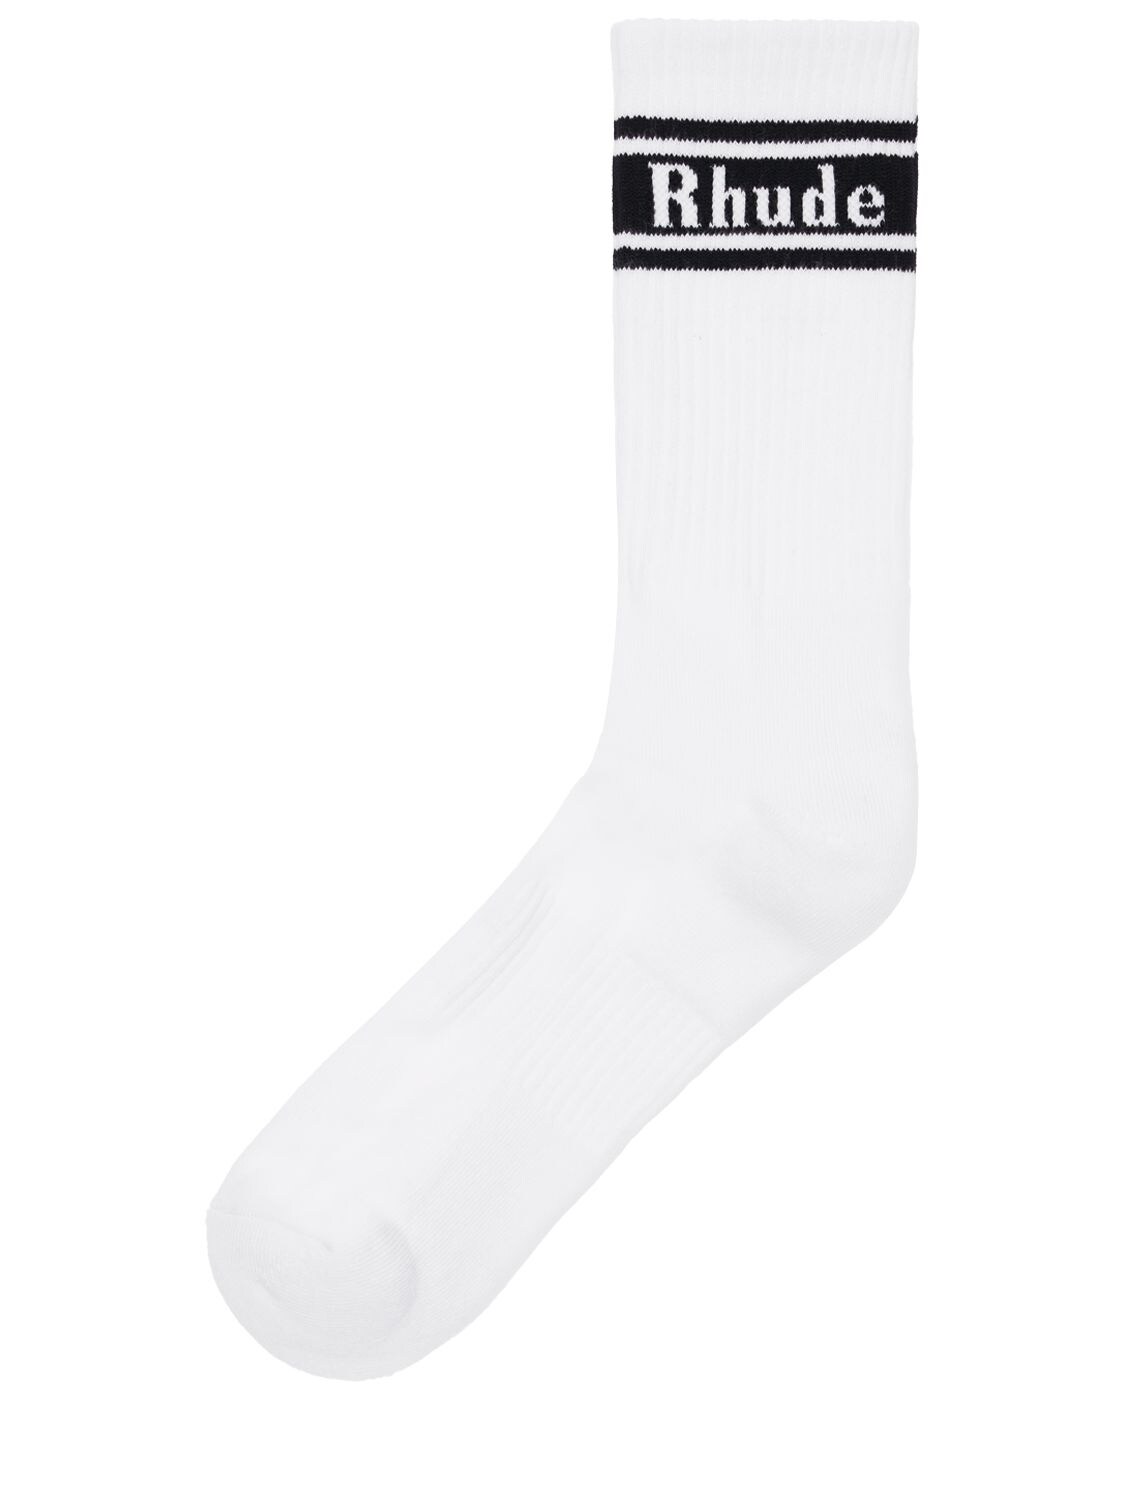 RHUDE 条纹LOGO混棉袜子,74I5LU015-MDQ5OQ2